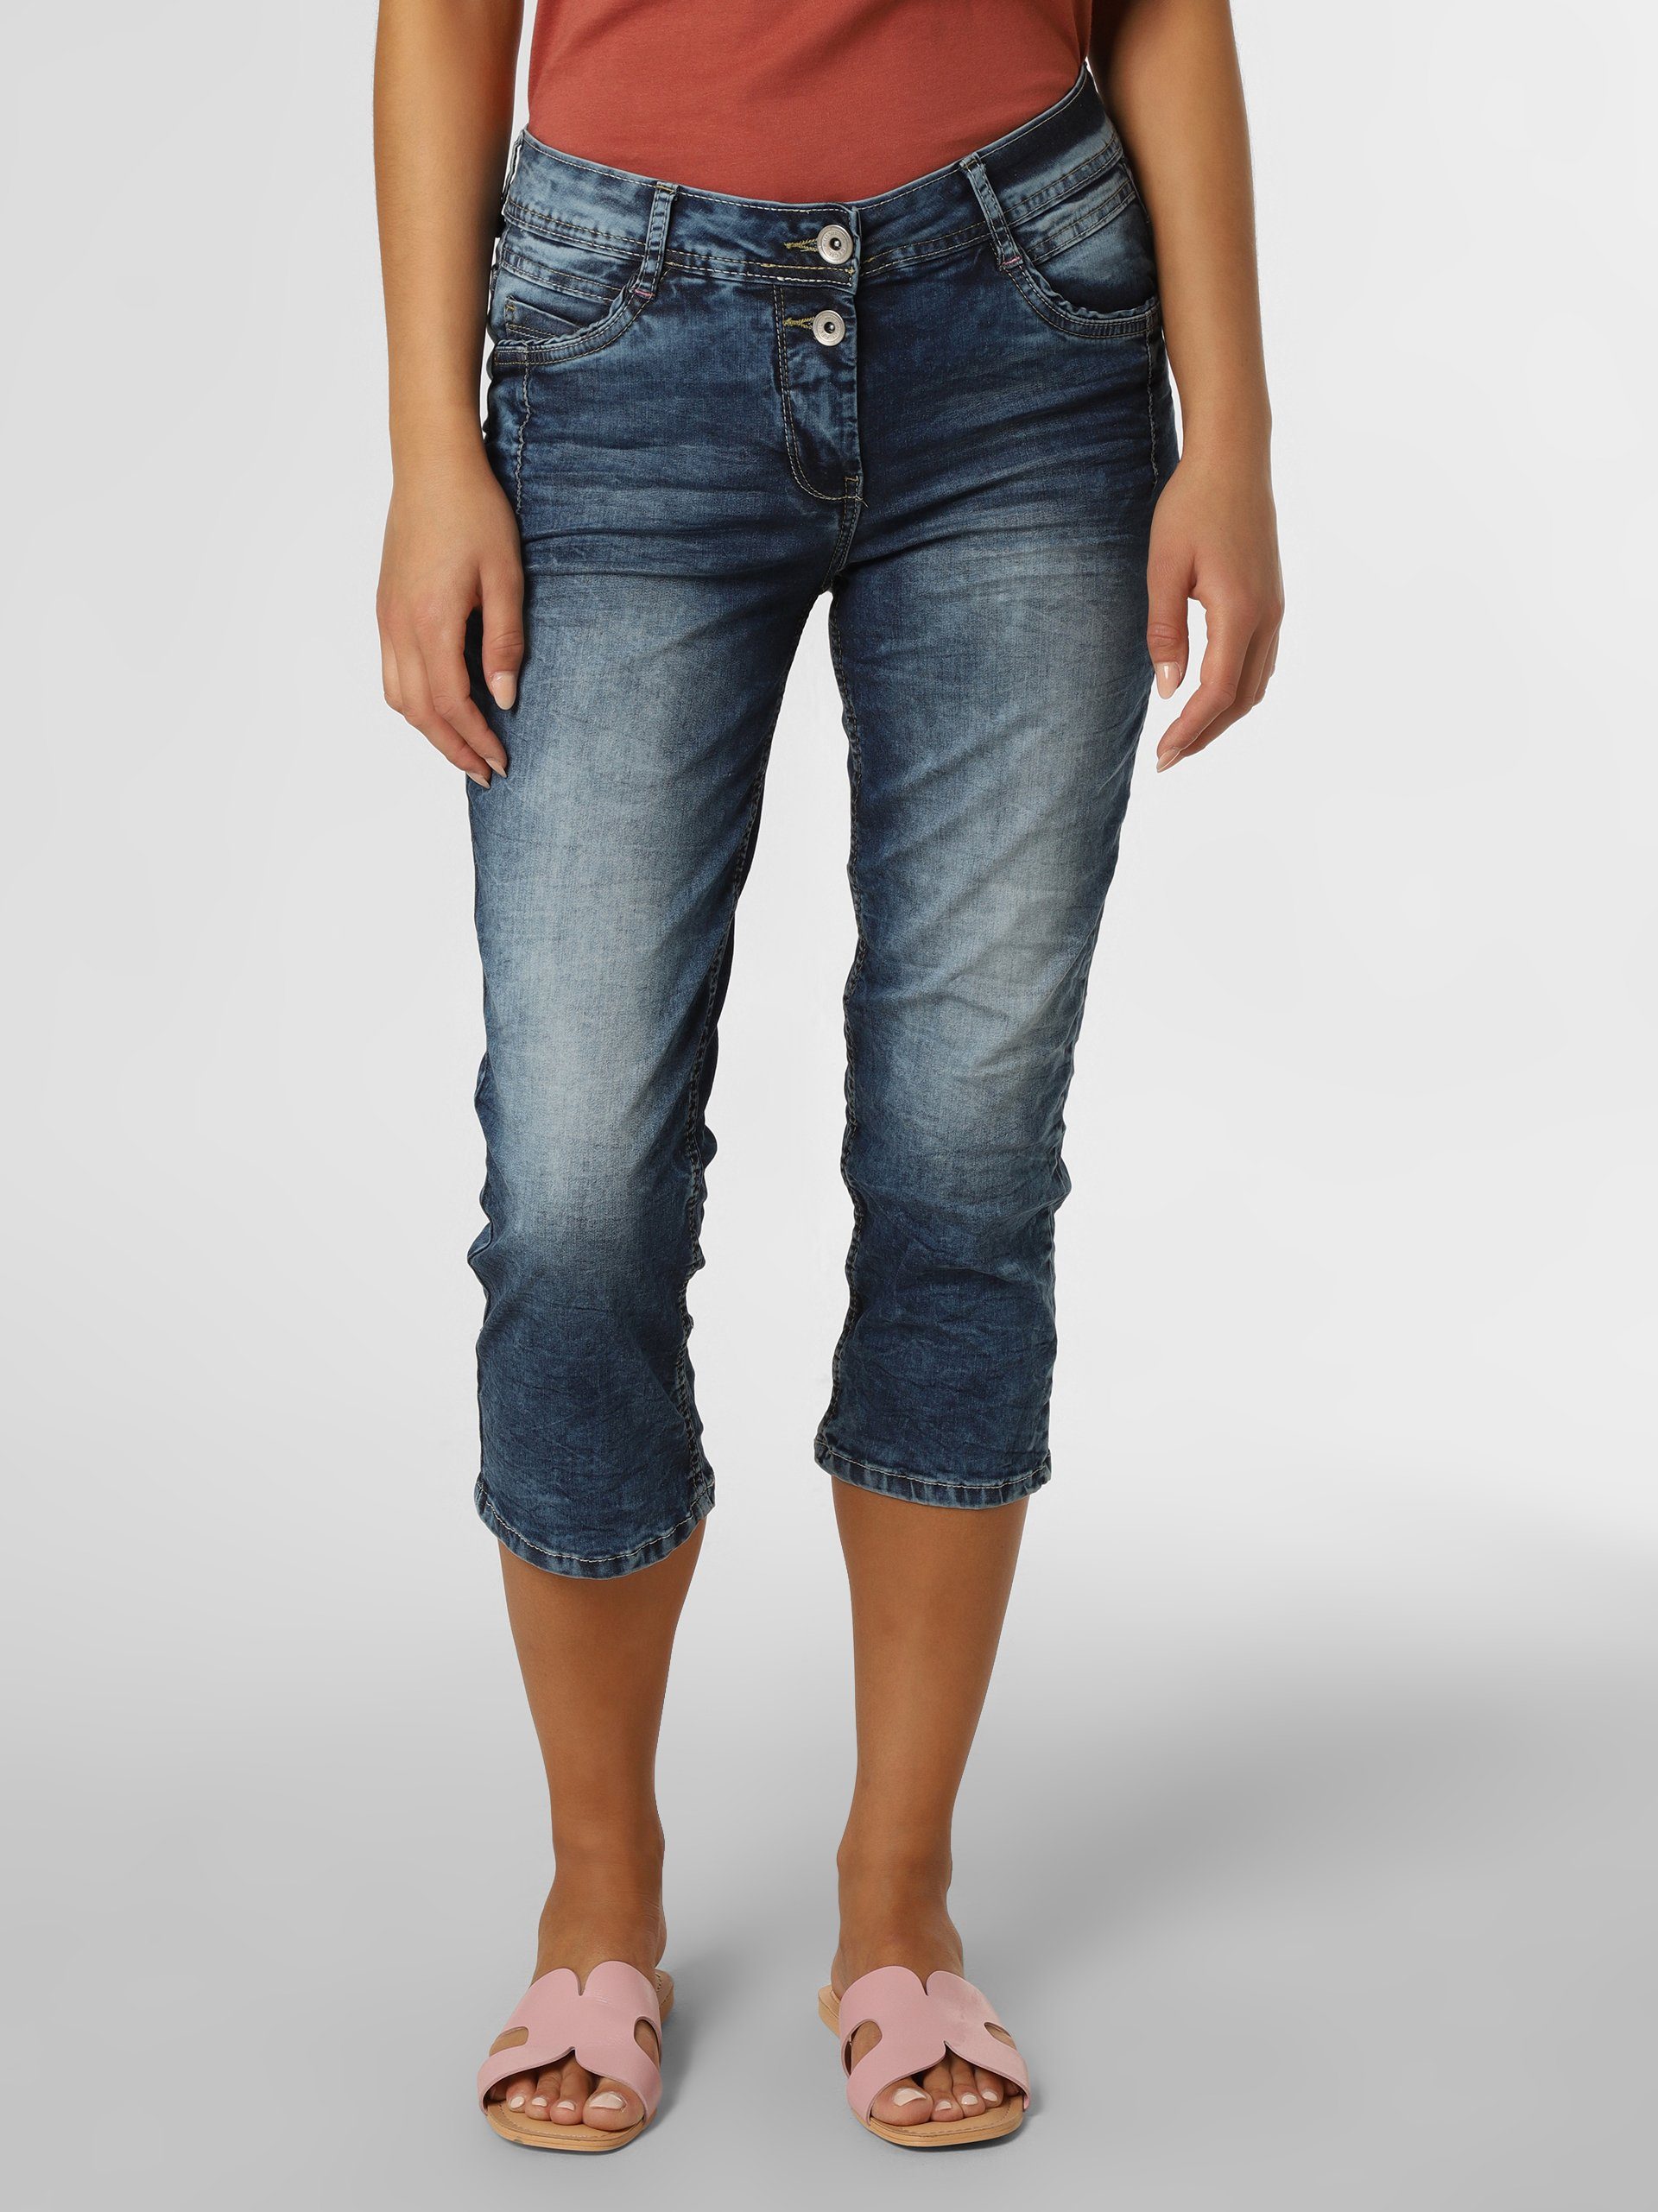 Cecil Jeans Shorts für Damen online kaufen | OTTO